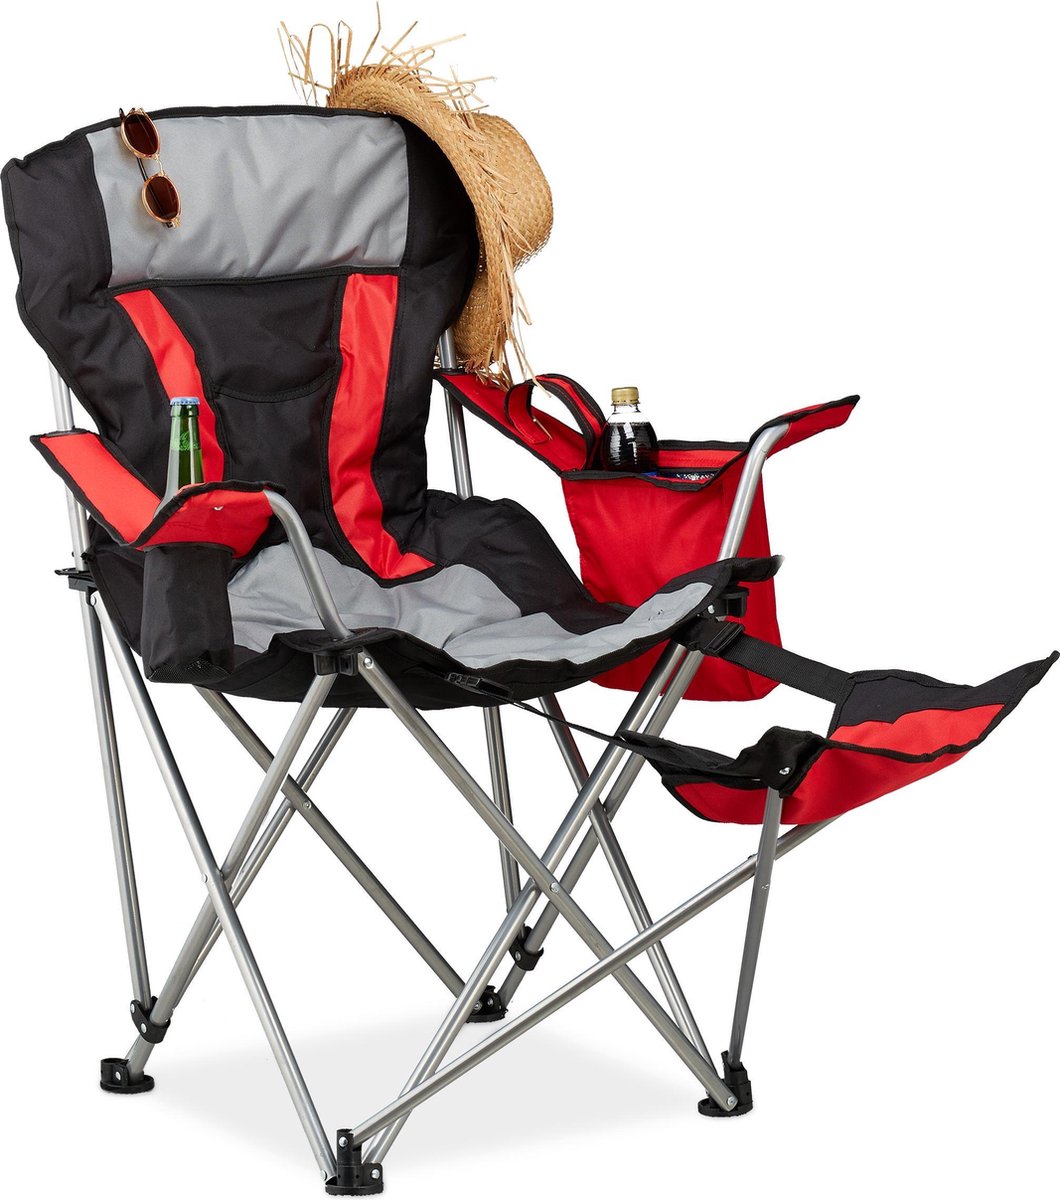 Meting ondergoed zondaar Relaxdays campingstoel met voetensteun - klapstoel - kampeerstoel -  vouwstoel - tot 150 kg | bol.com